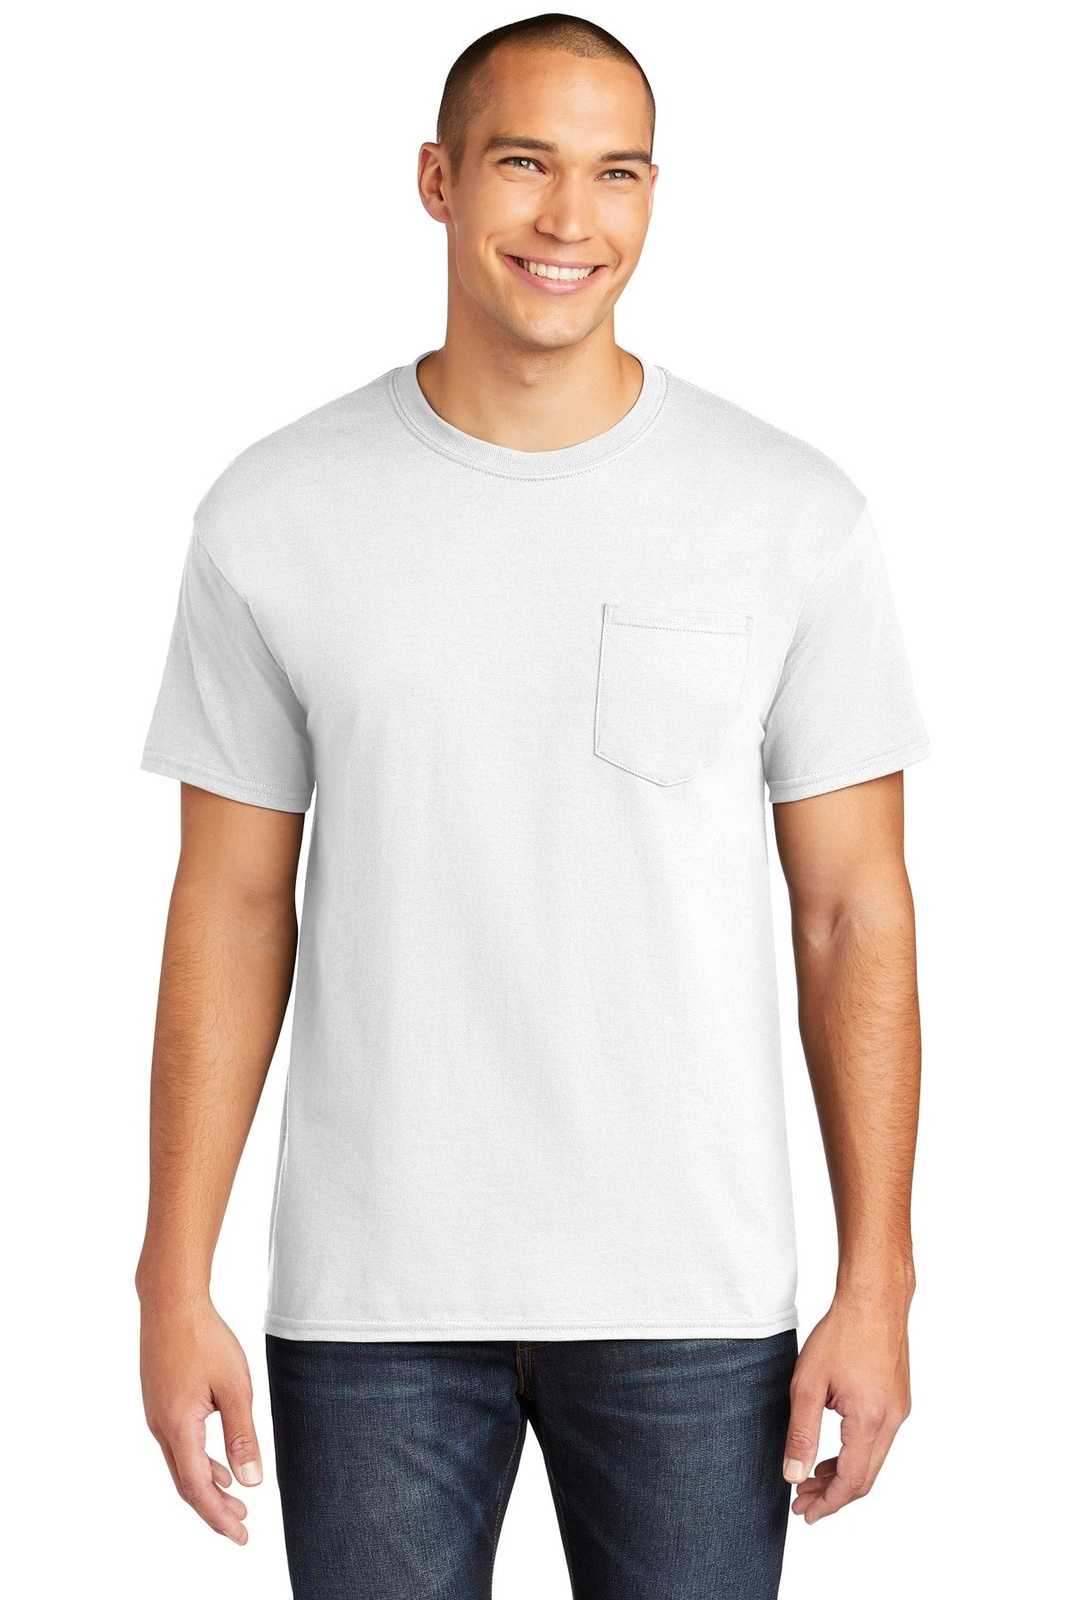 Gildan 5300 Heavy Cotton 100% Cotton Pocket T-Shirt - White - HIT a Double